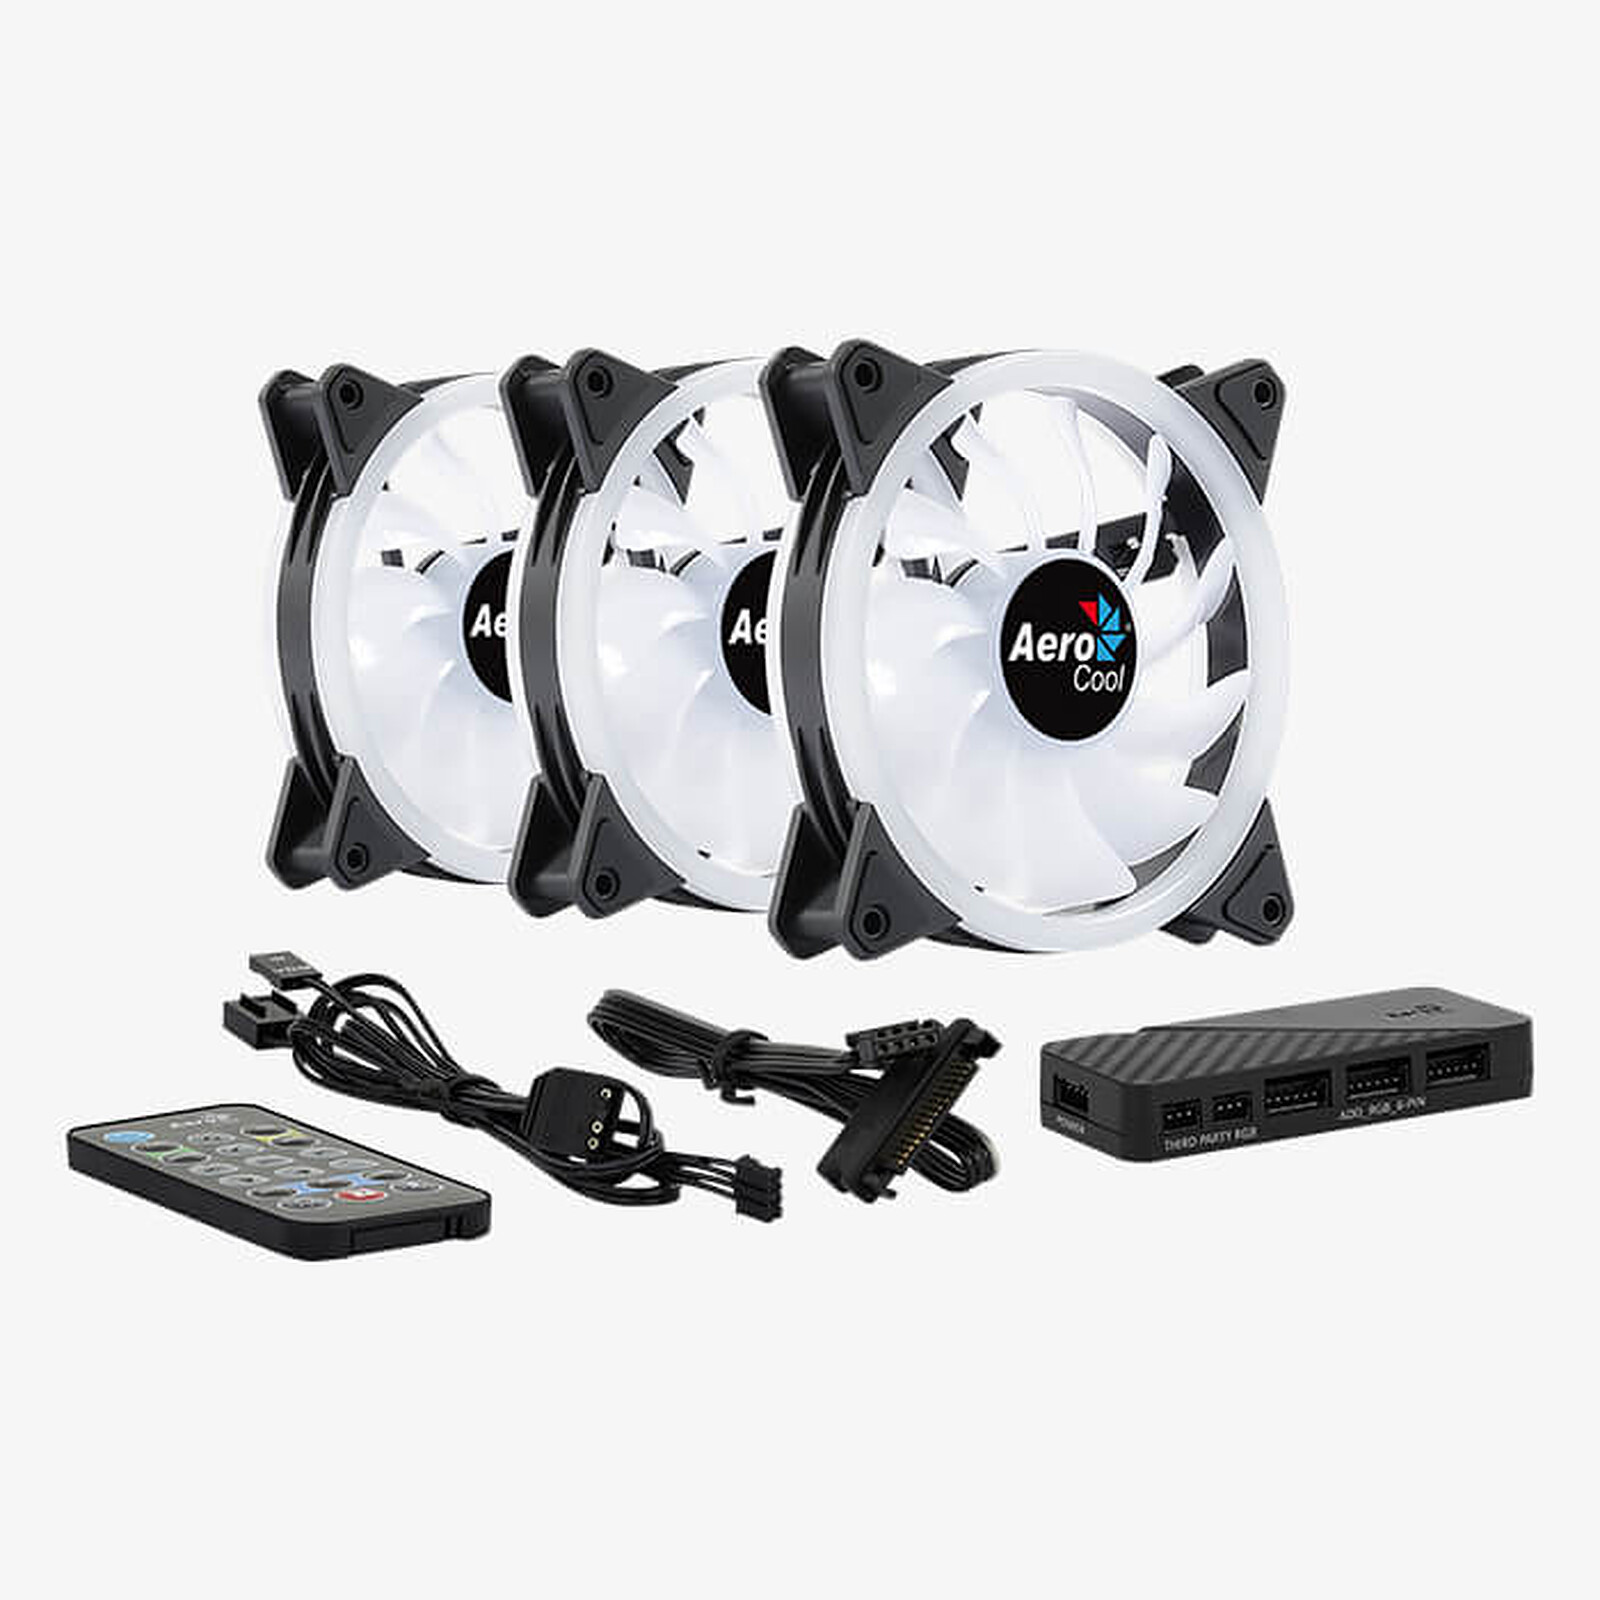 Ventilateur Boîtier PC Mars Gaming MFX RGB au meilleur prix